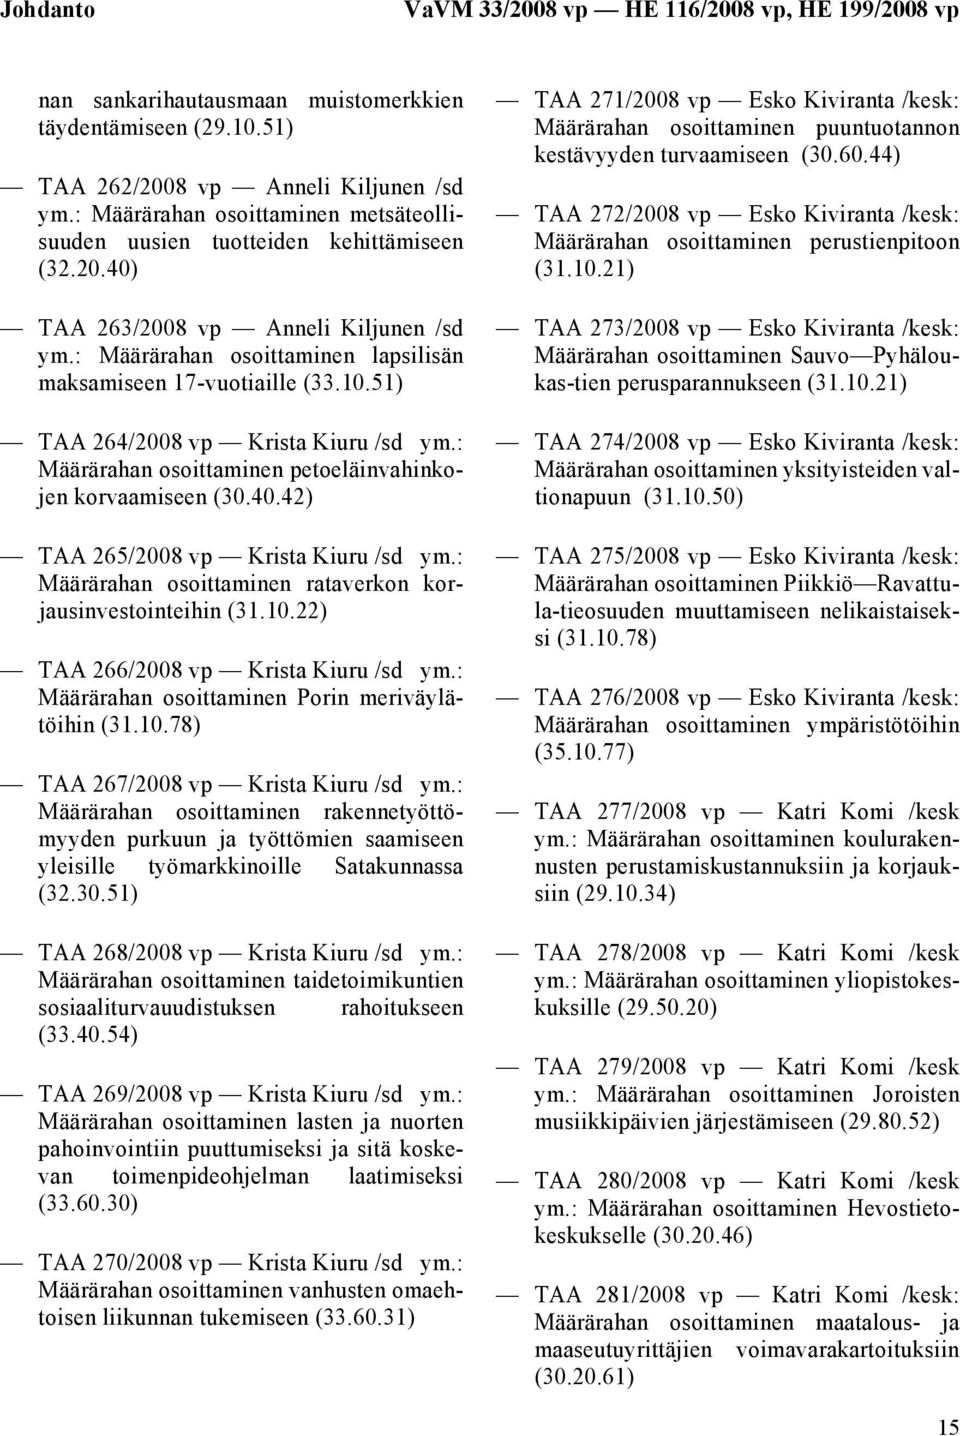 51) TAA 264/2008 vp Krista Kiuru /sd ym.: Määrärahan osoittaminen petoeläinvahinkojen korvaamiseen (30.40.42) TAA 265/2008 vp Krista Kiuru /sd ym.